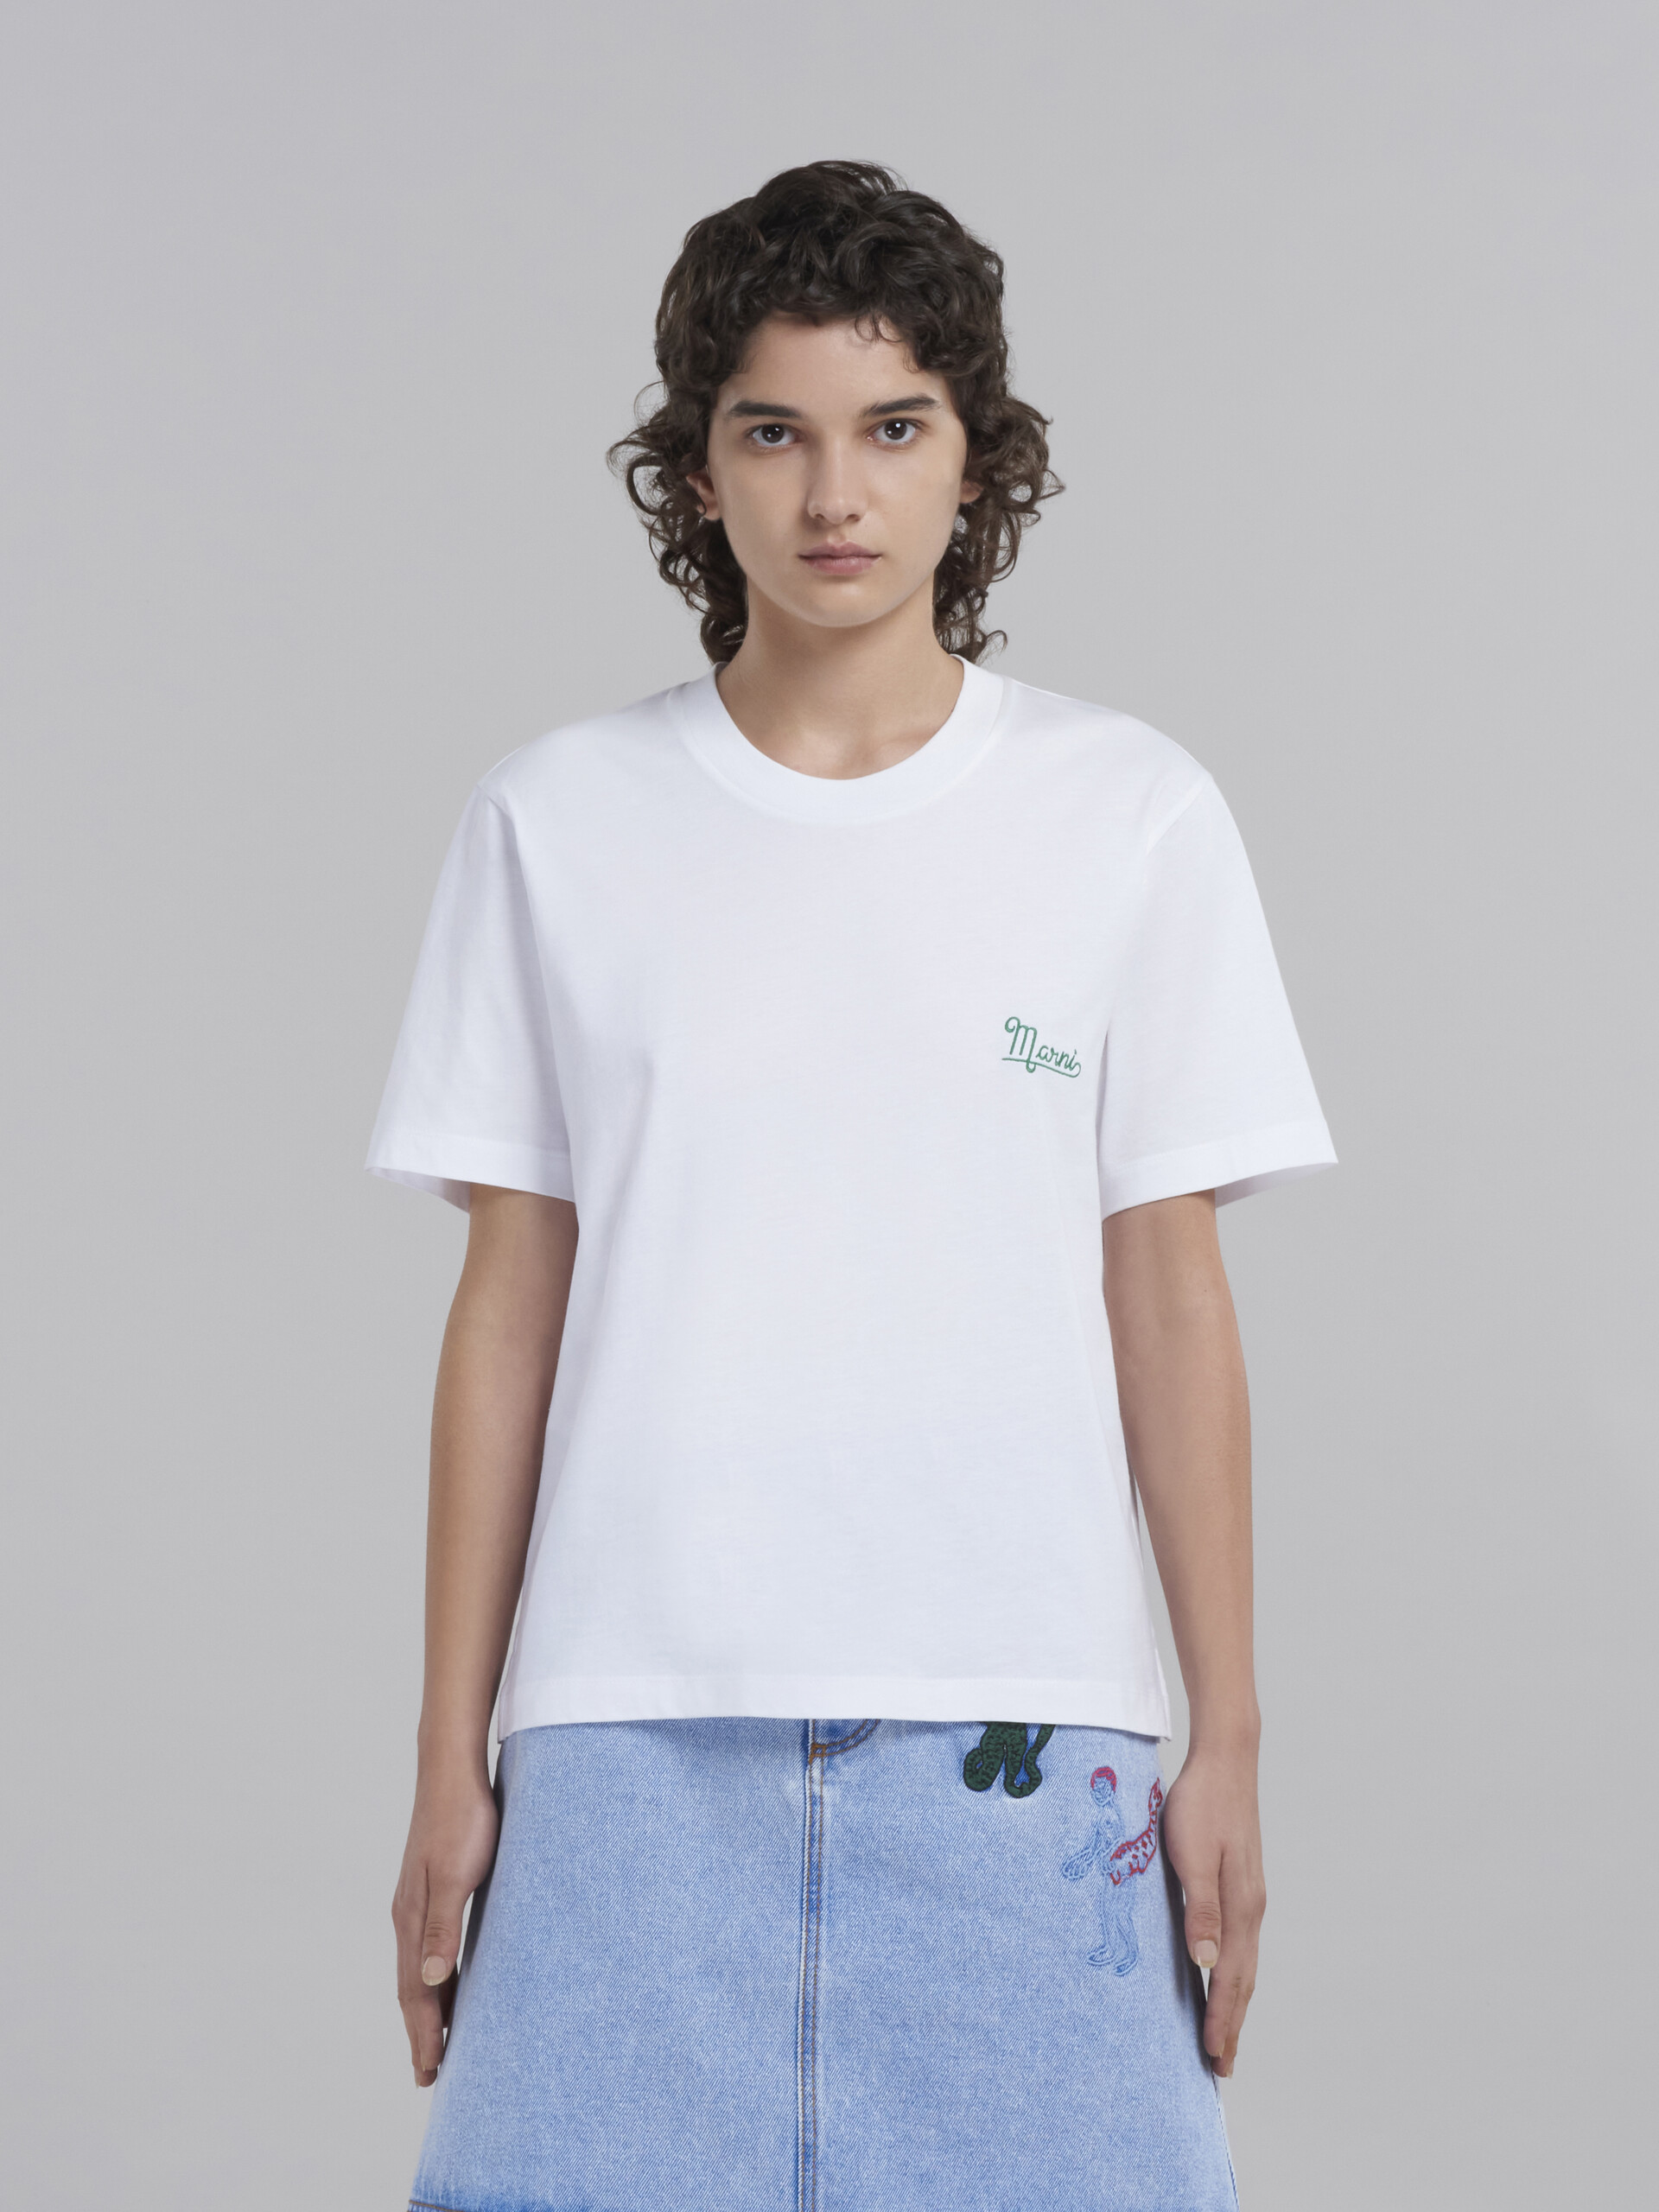 オーガニックコットン製Tシャツ3枚セット - Tシャツ - Image 2